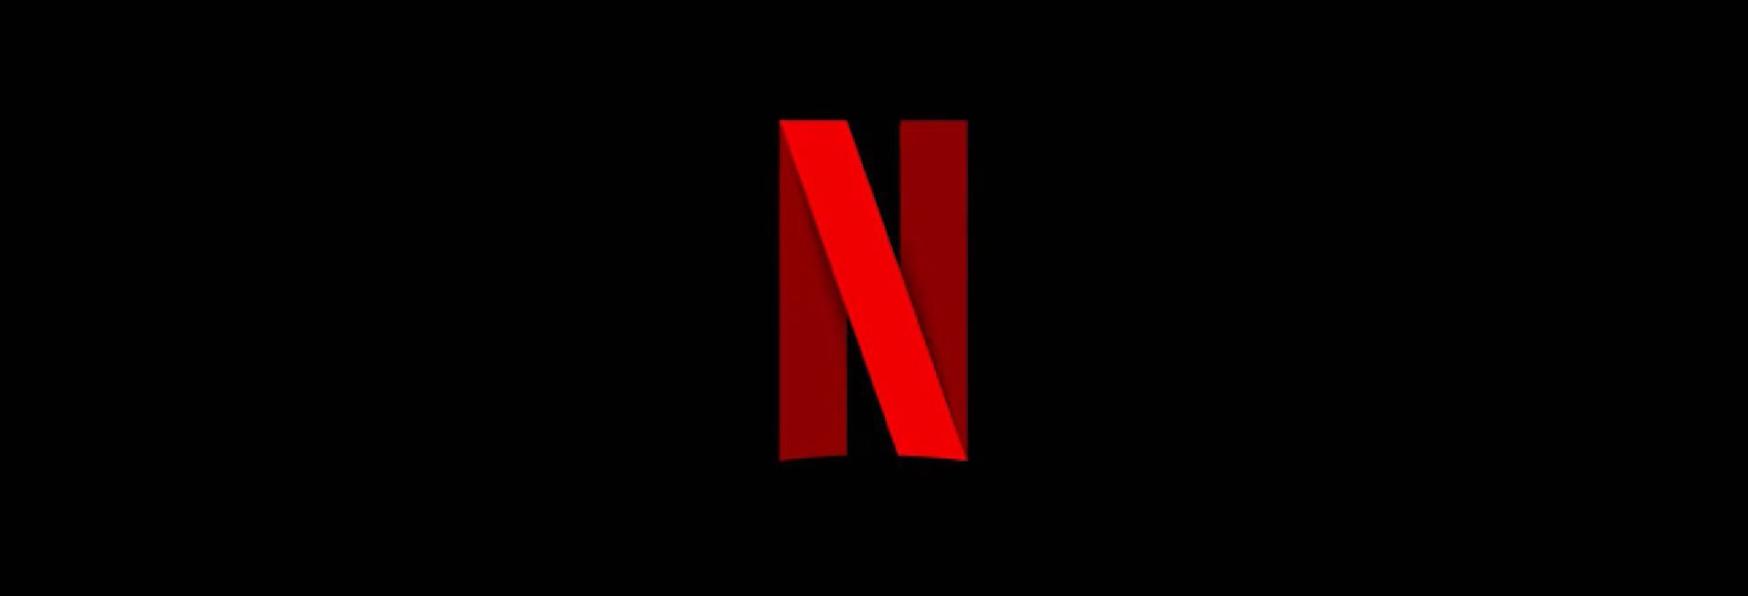 L'introduzione delle Pubblicità Risolleverà Netflix? Alcune Previsioni degli Analisti